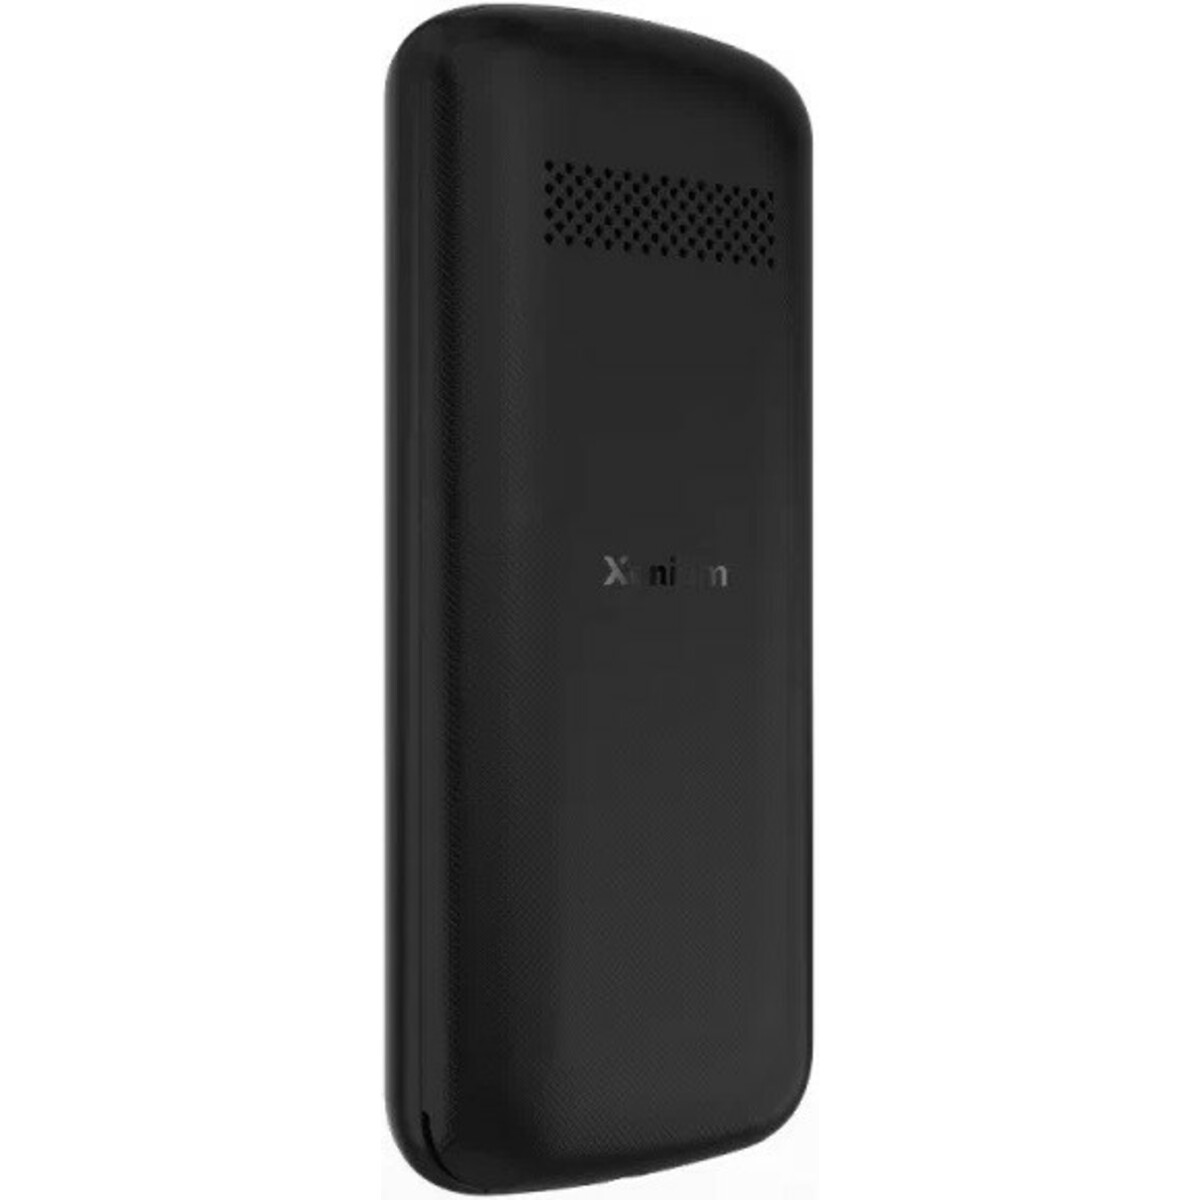 Мобильный телефон Philips Xenium X170, черный 